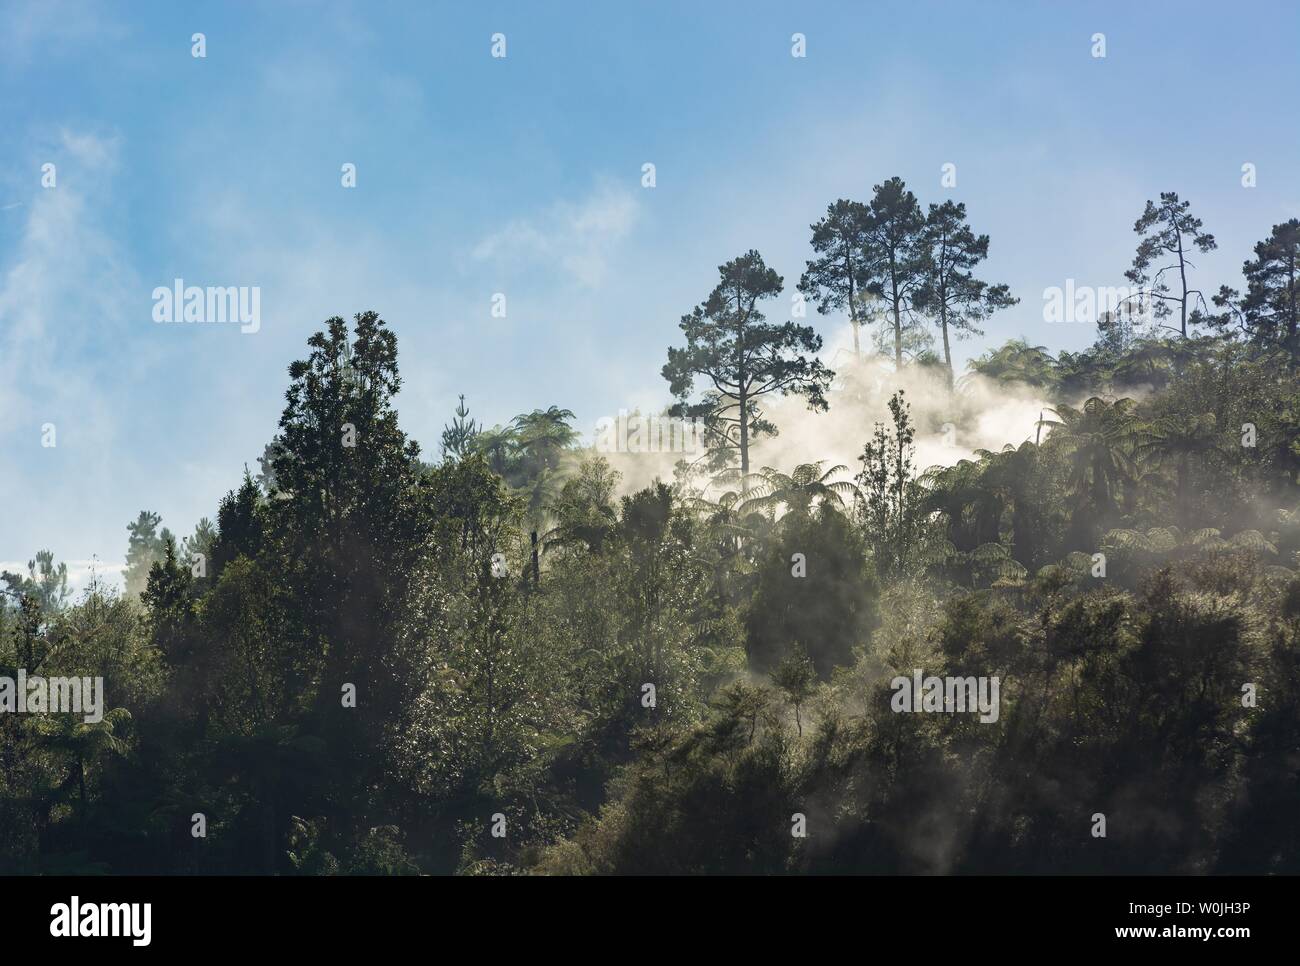 La foresta tropicale con la nebbia e il vapore da hot springs, Orakei Korako Parco geotermico, area geotermica, Hidden Valley, Taupo zona vulcanica, Nord Foto Stock